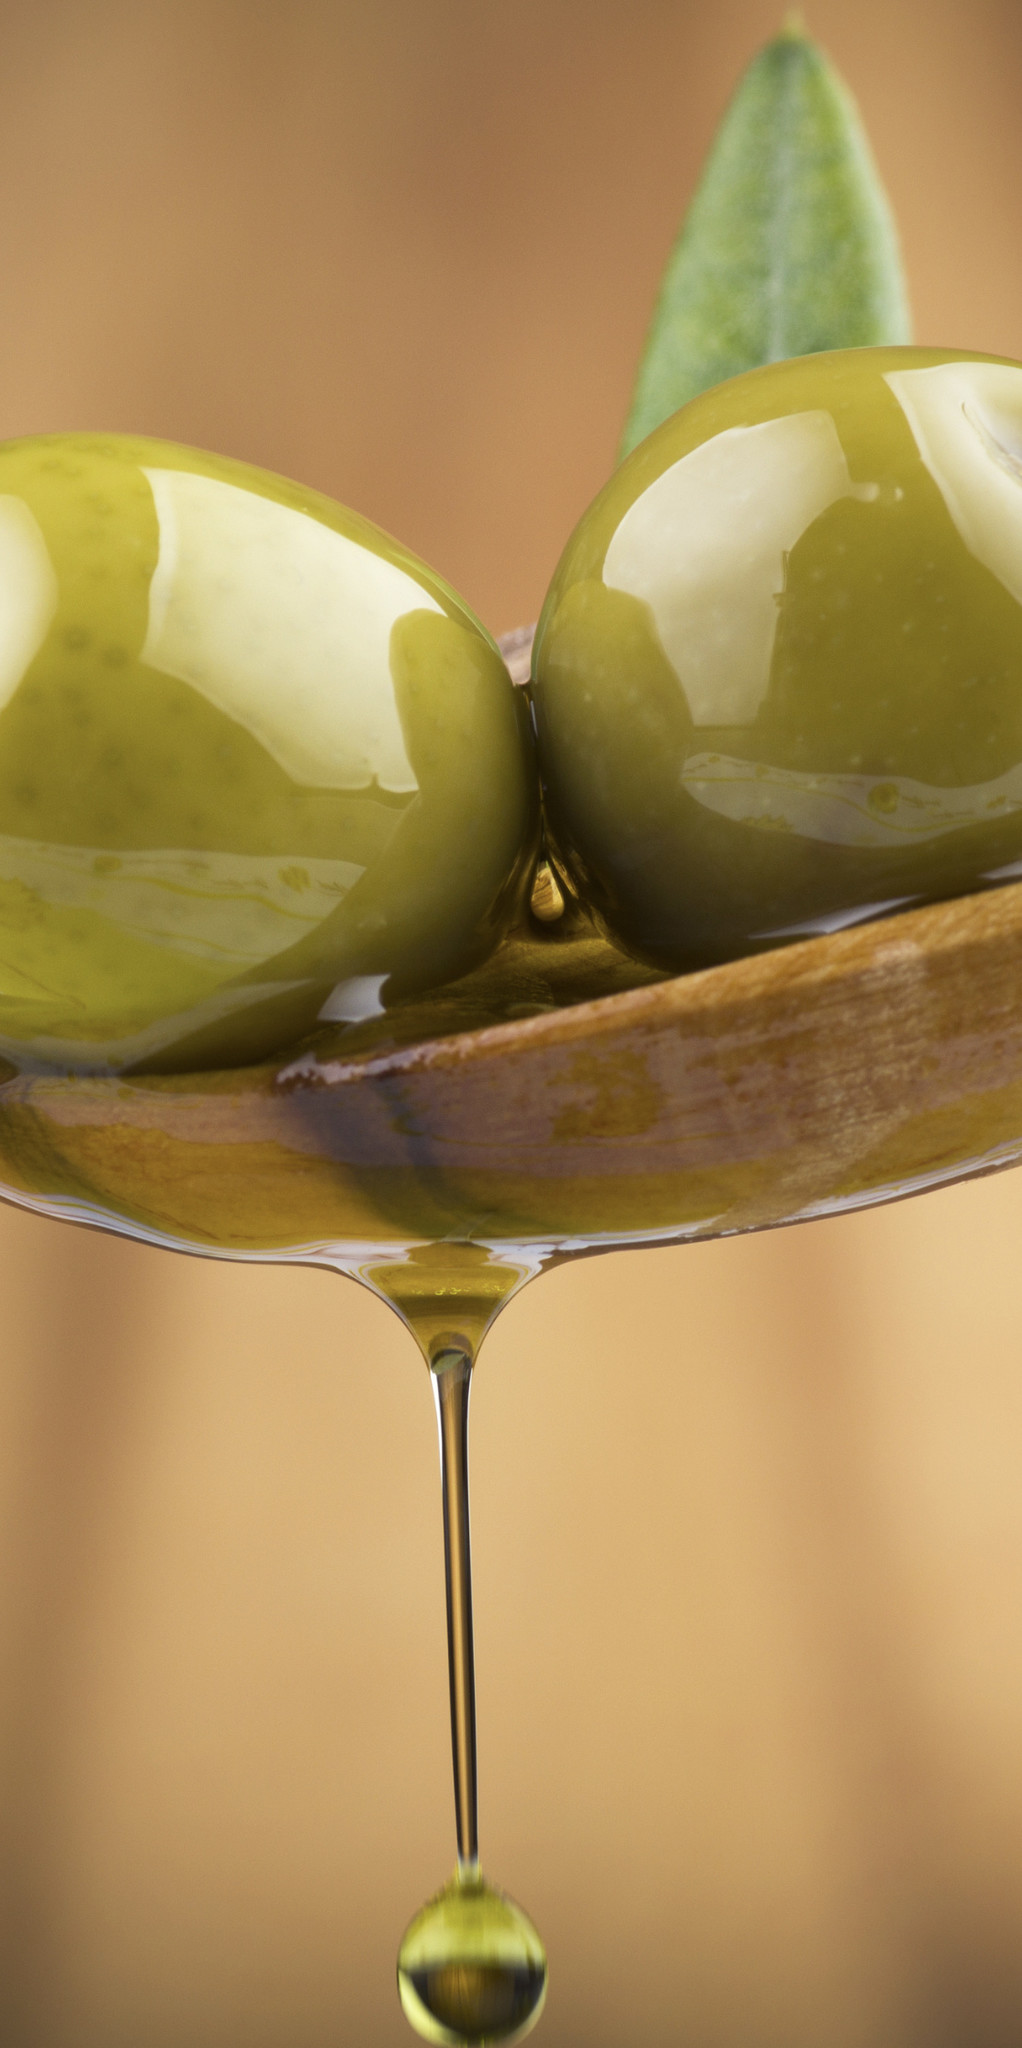 Pilfer Peer Voorwaarden Over olijfolie - De Olijfolie Shop. Lekker & gezond - De Olijfolie Shop